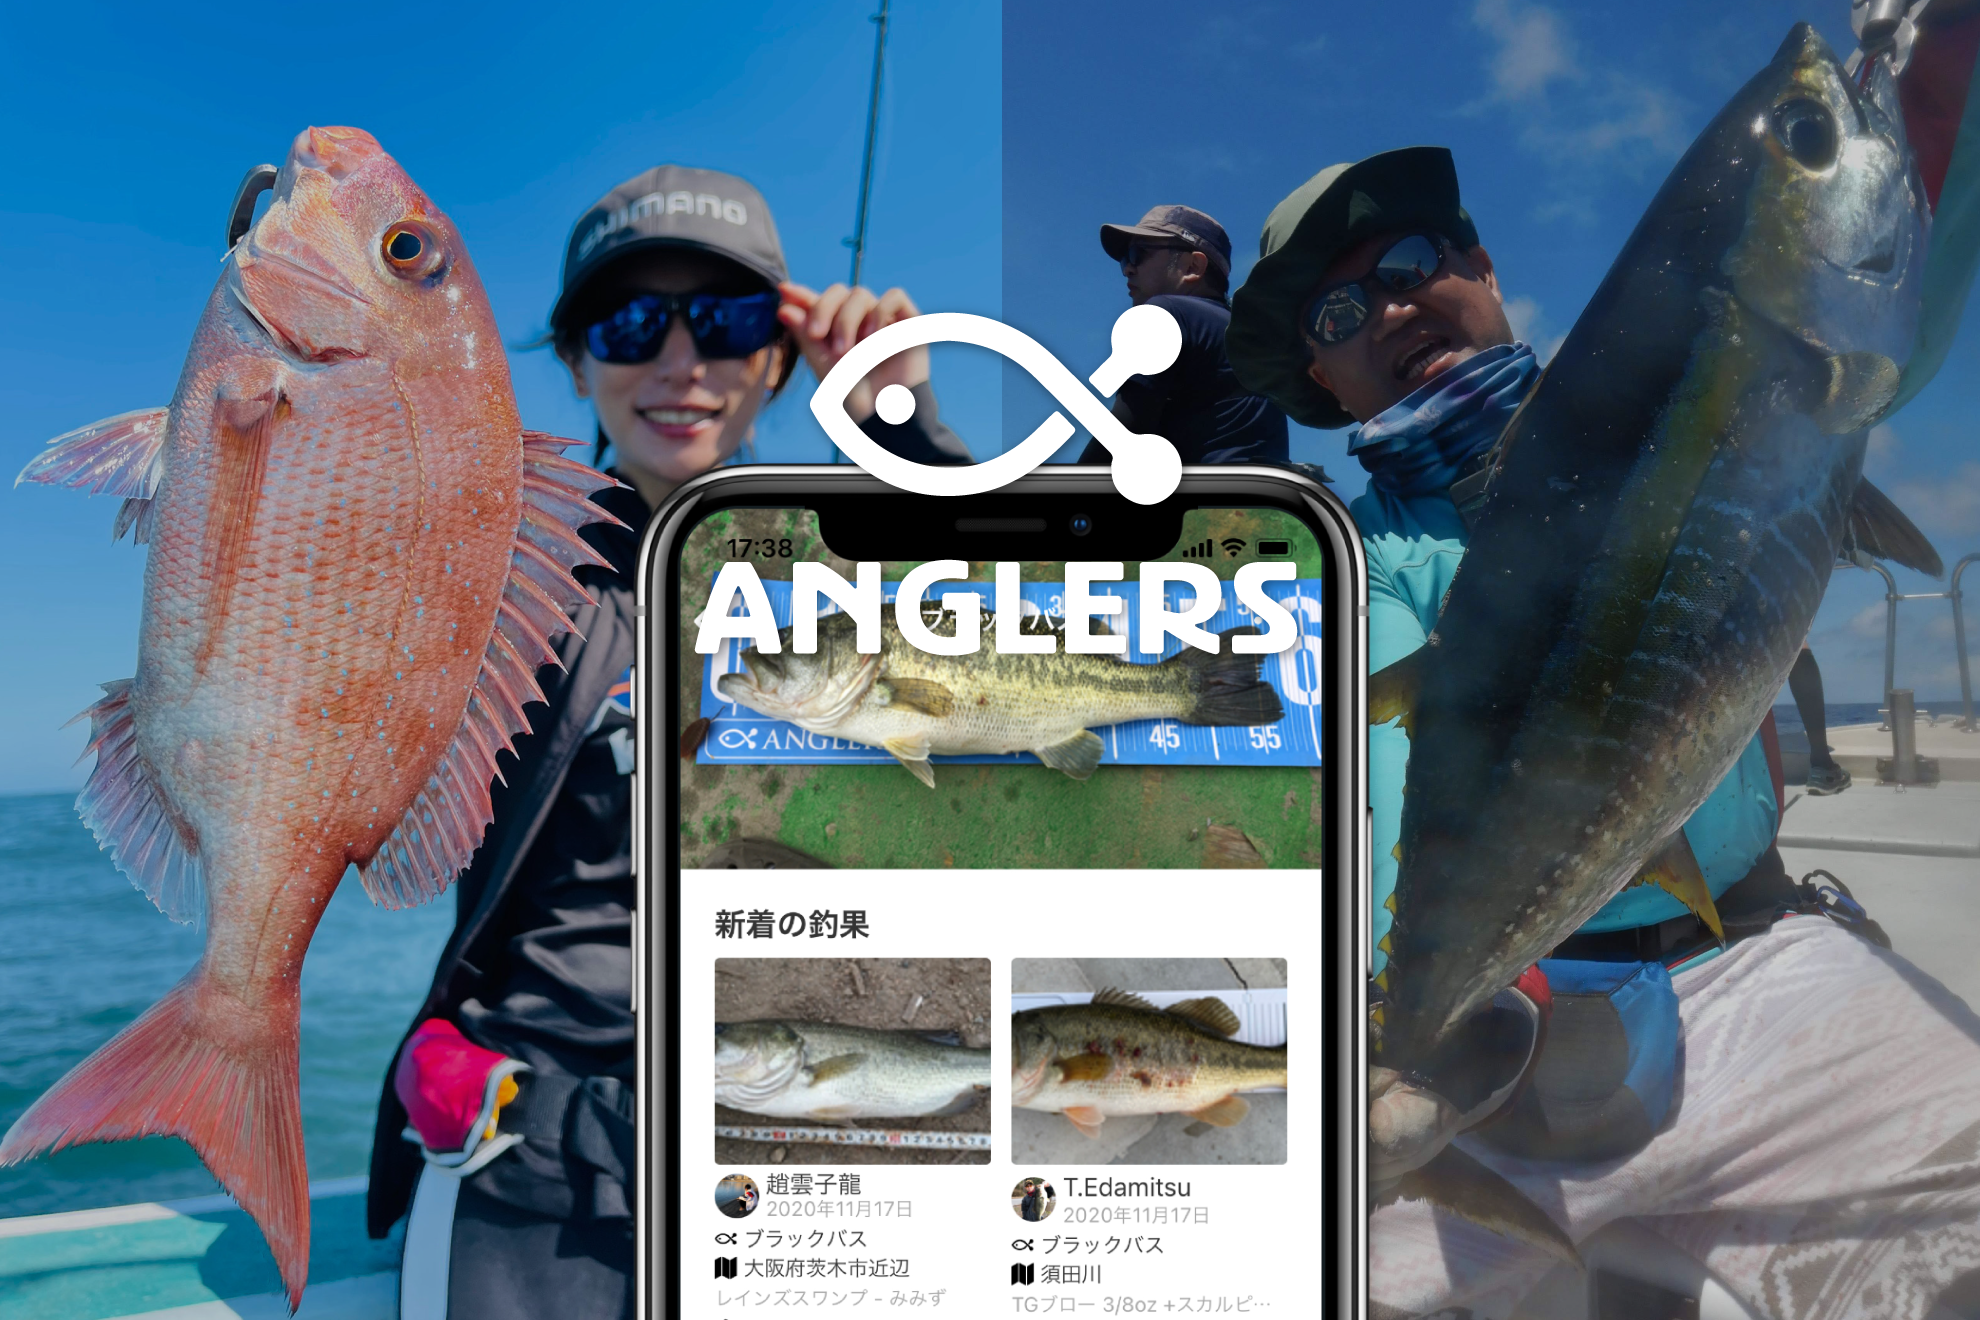 同社は、ユーザー参加型のメディア『アングラーズ』で、リアルタイムな釣り情報を共有するサービスを開発・提供するTechベンチャー。